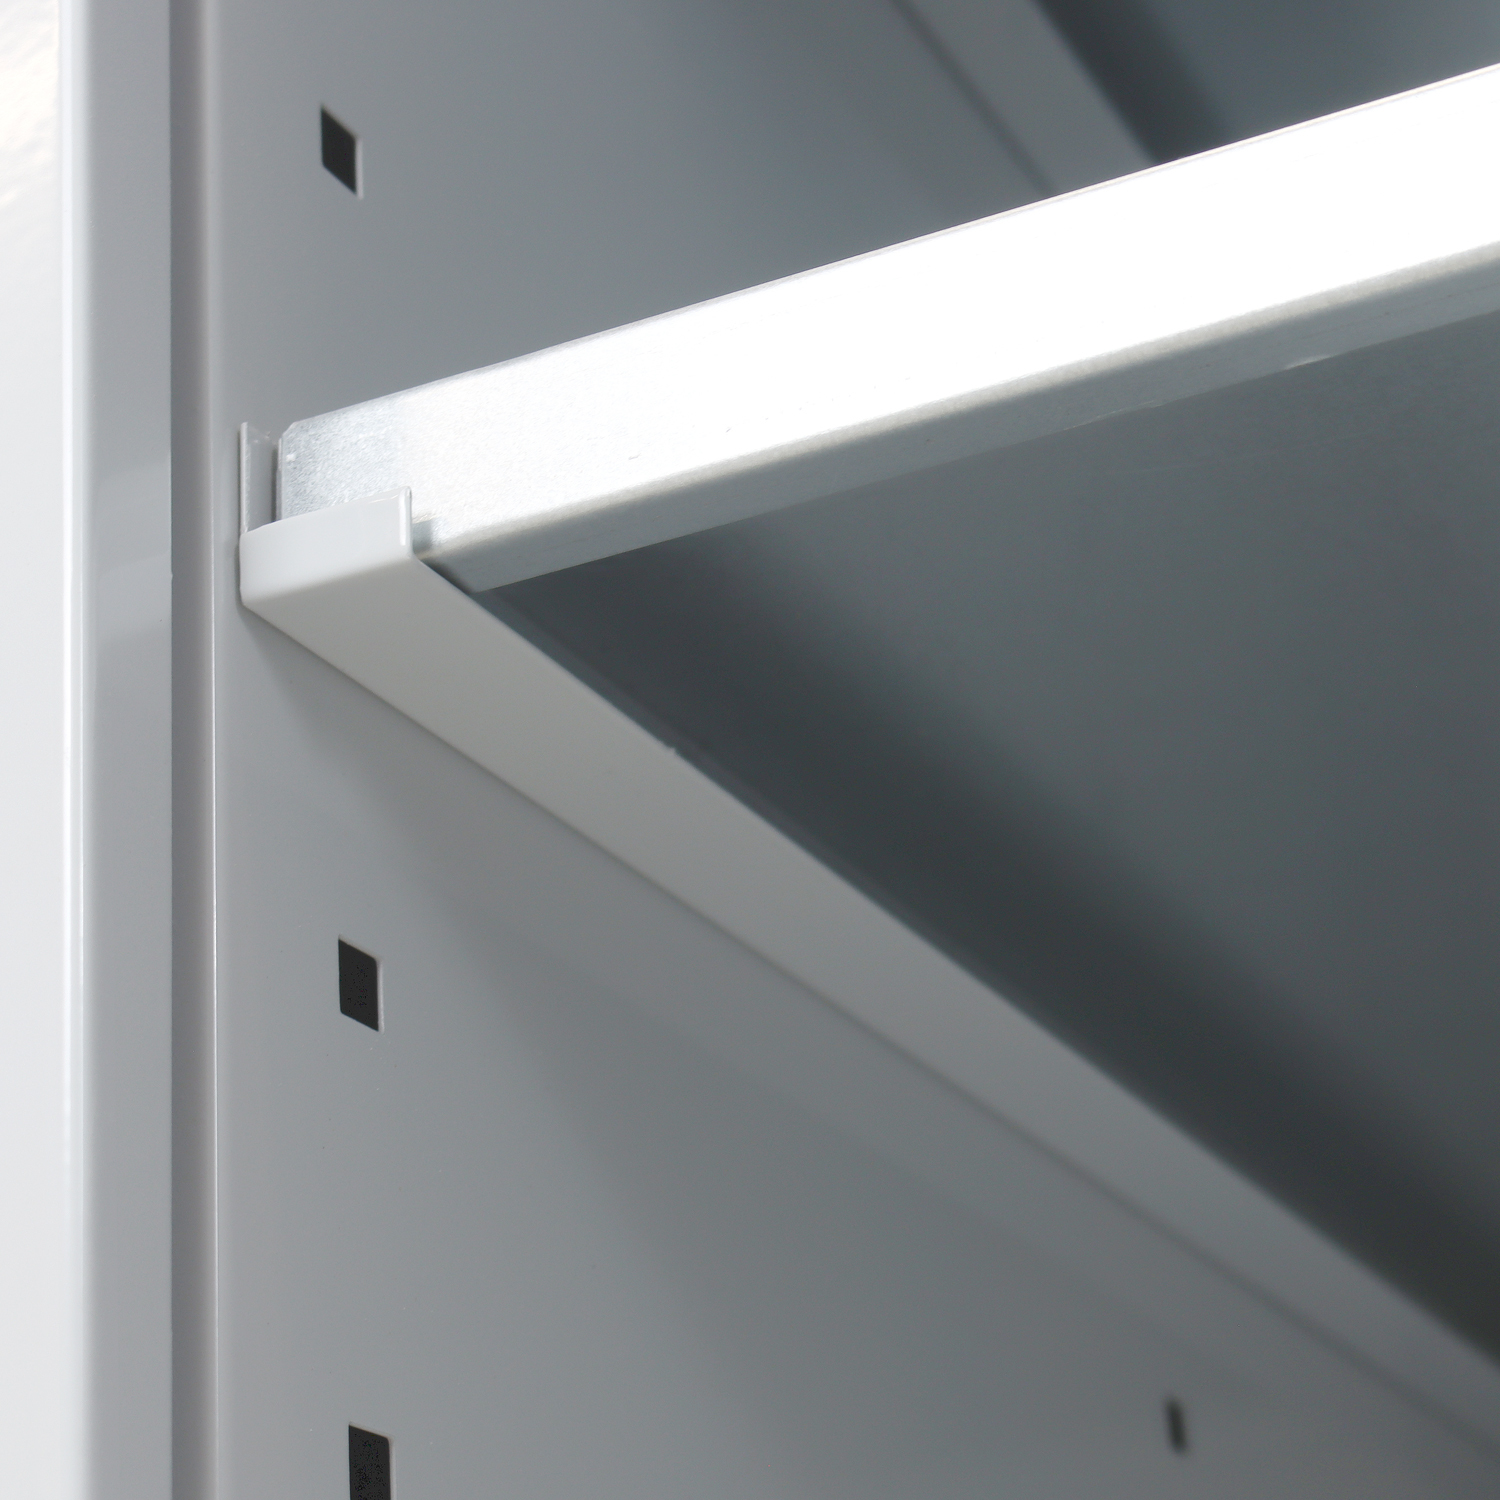 Stahlblechschrank mit Tür und 2 Fachböden für Werkbank Rhino| HxBxT 80x53x70cm | Traglast 50kg | Lichtgrau/Lichtblau